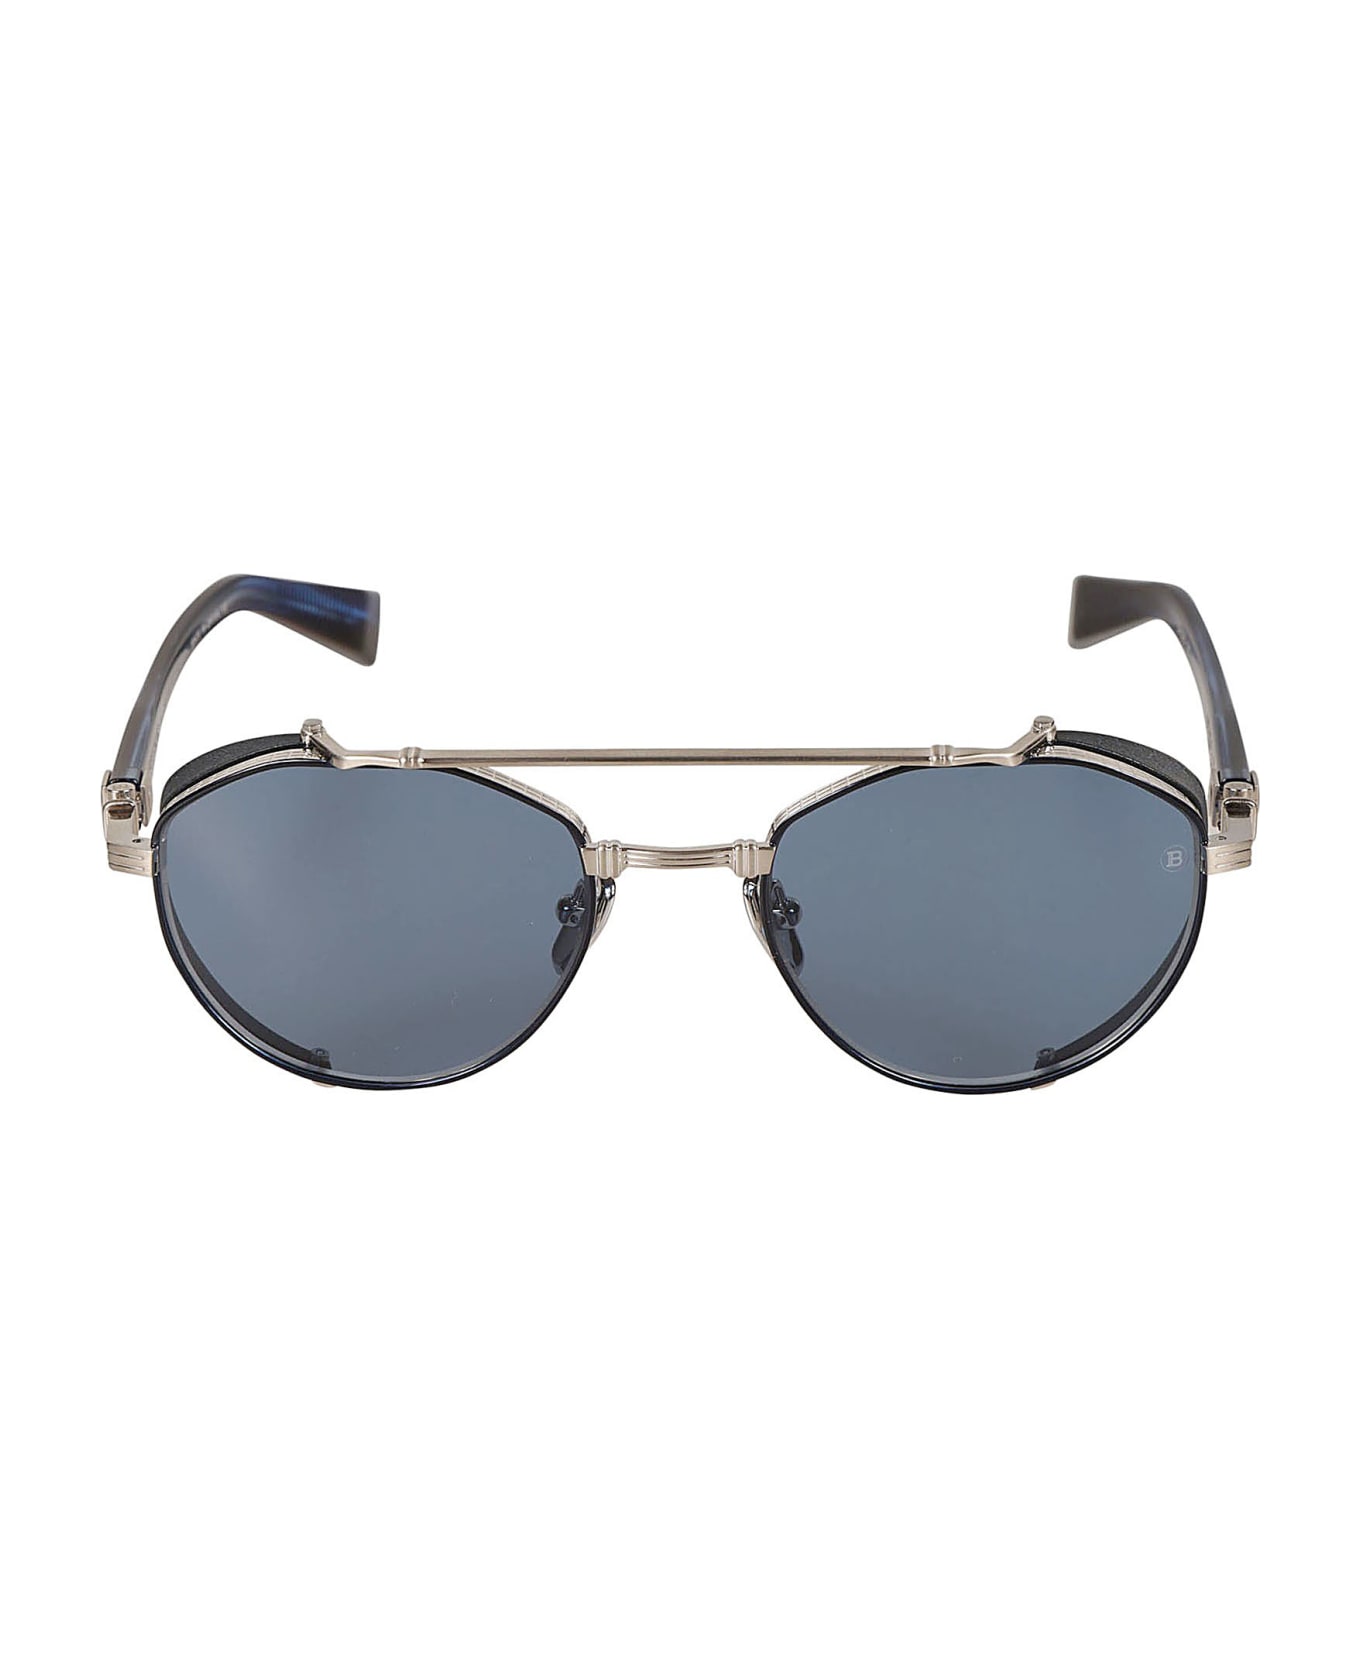 Balmain Brigade Iv Sunglasses Sunglasses - Blue